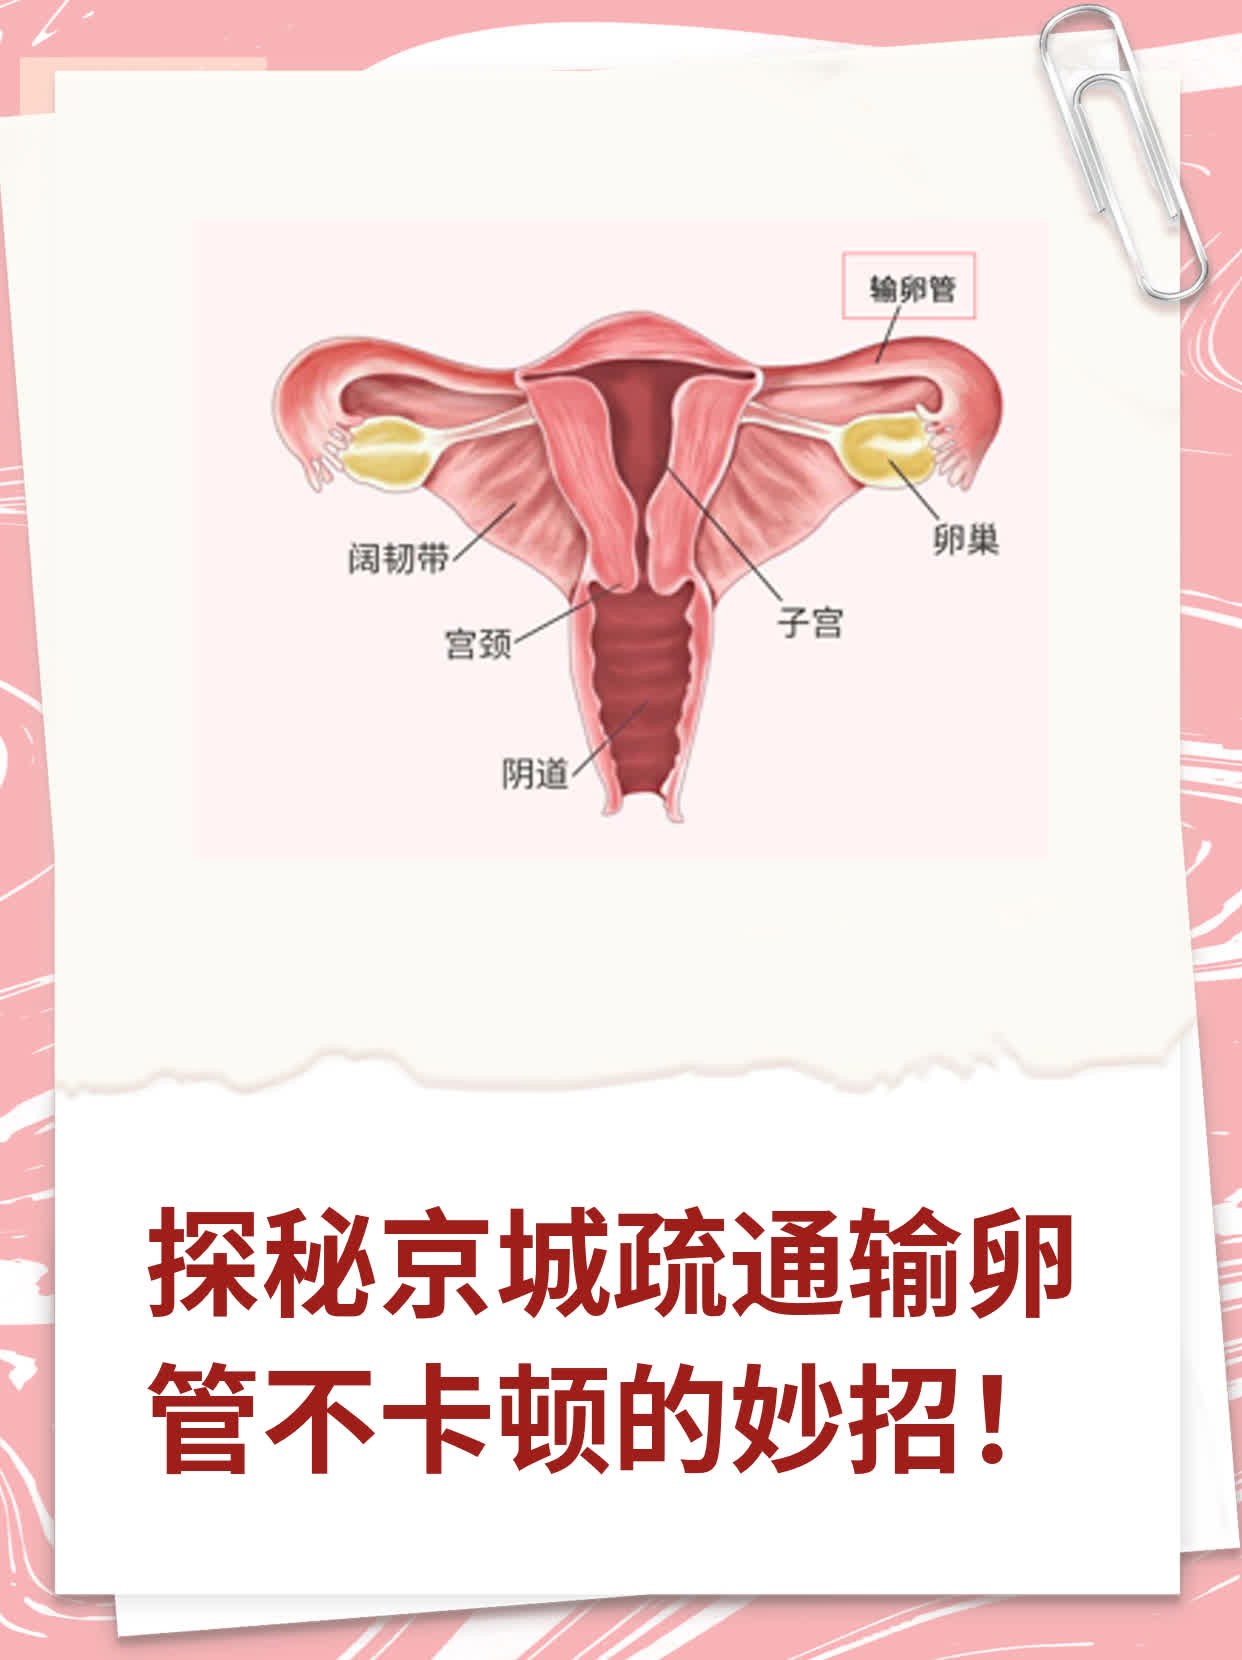 北京首都医科大输卵管通而不畅医院